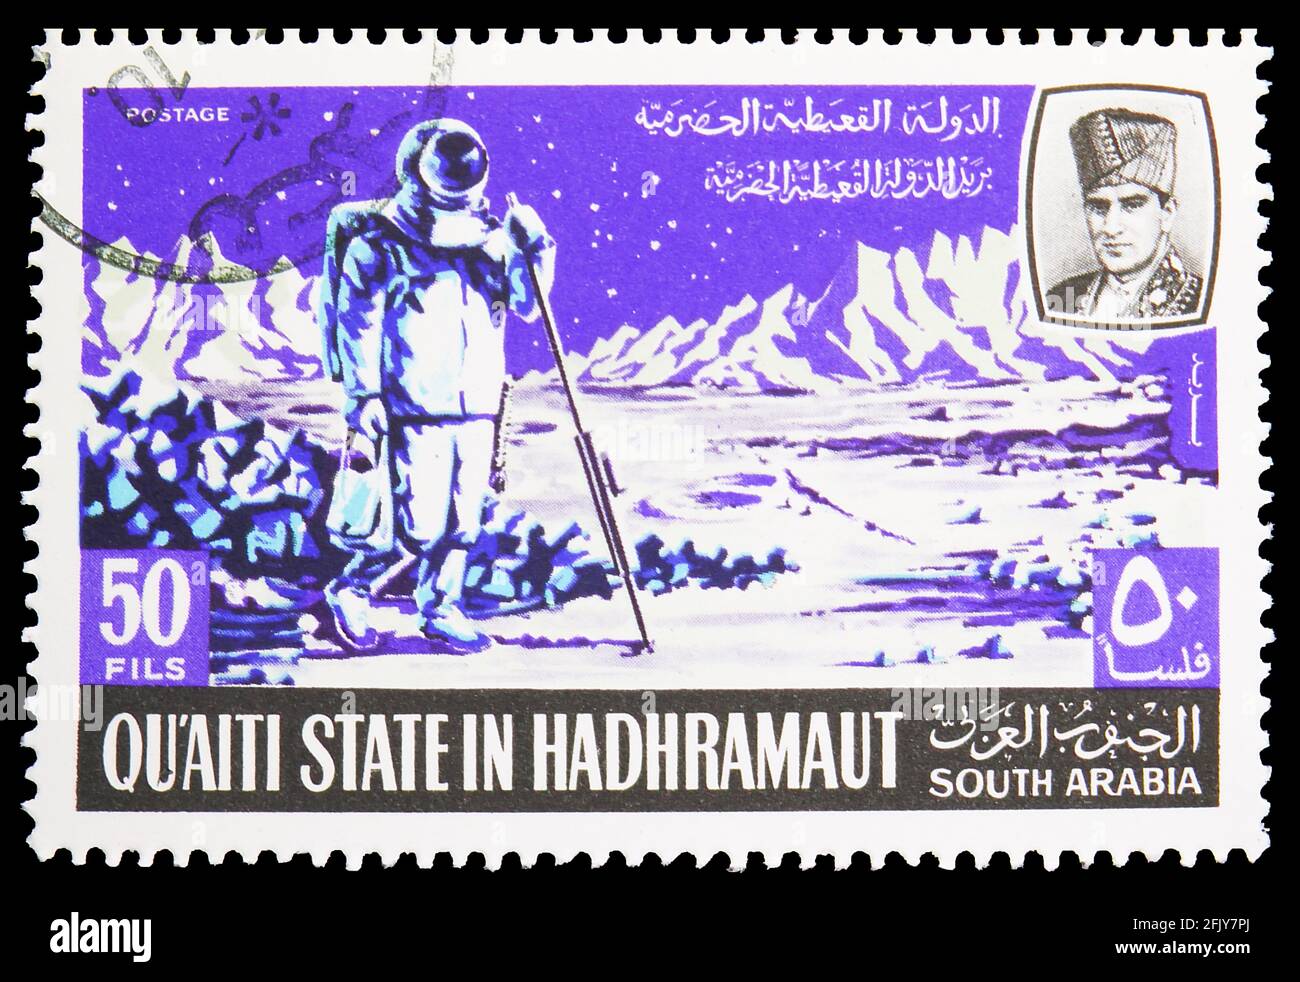 MOSCOU, RUSSIE - 16 NOVEMBRE 2019 : timbre-poste imprimé à Aden - Protectorats montre les programmes et projets de la recherche spatiale lunaire, Qu'aiti S. Banque D'Images